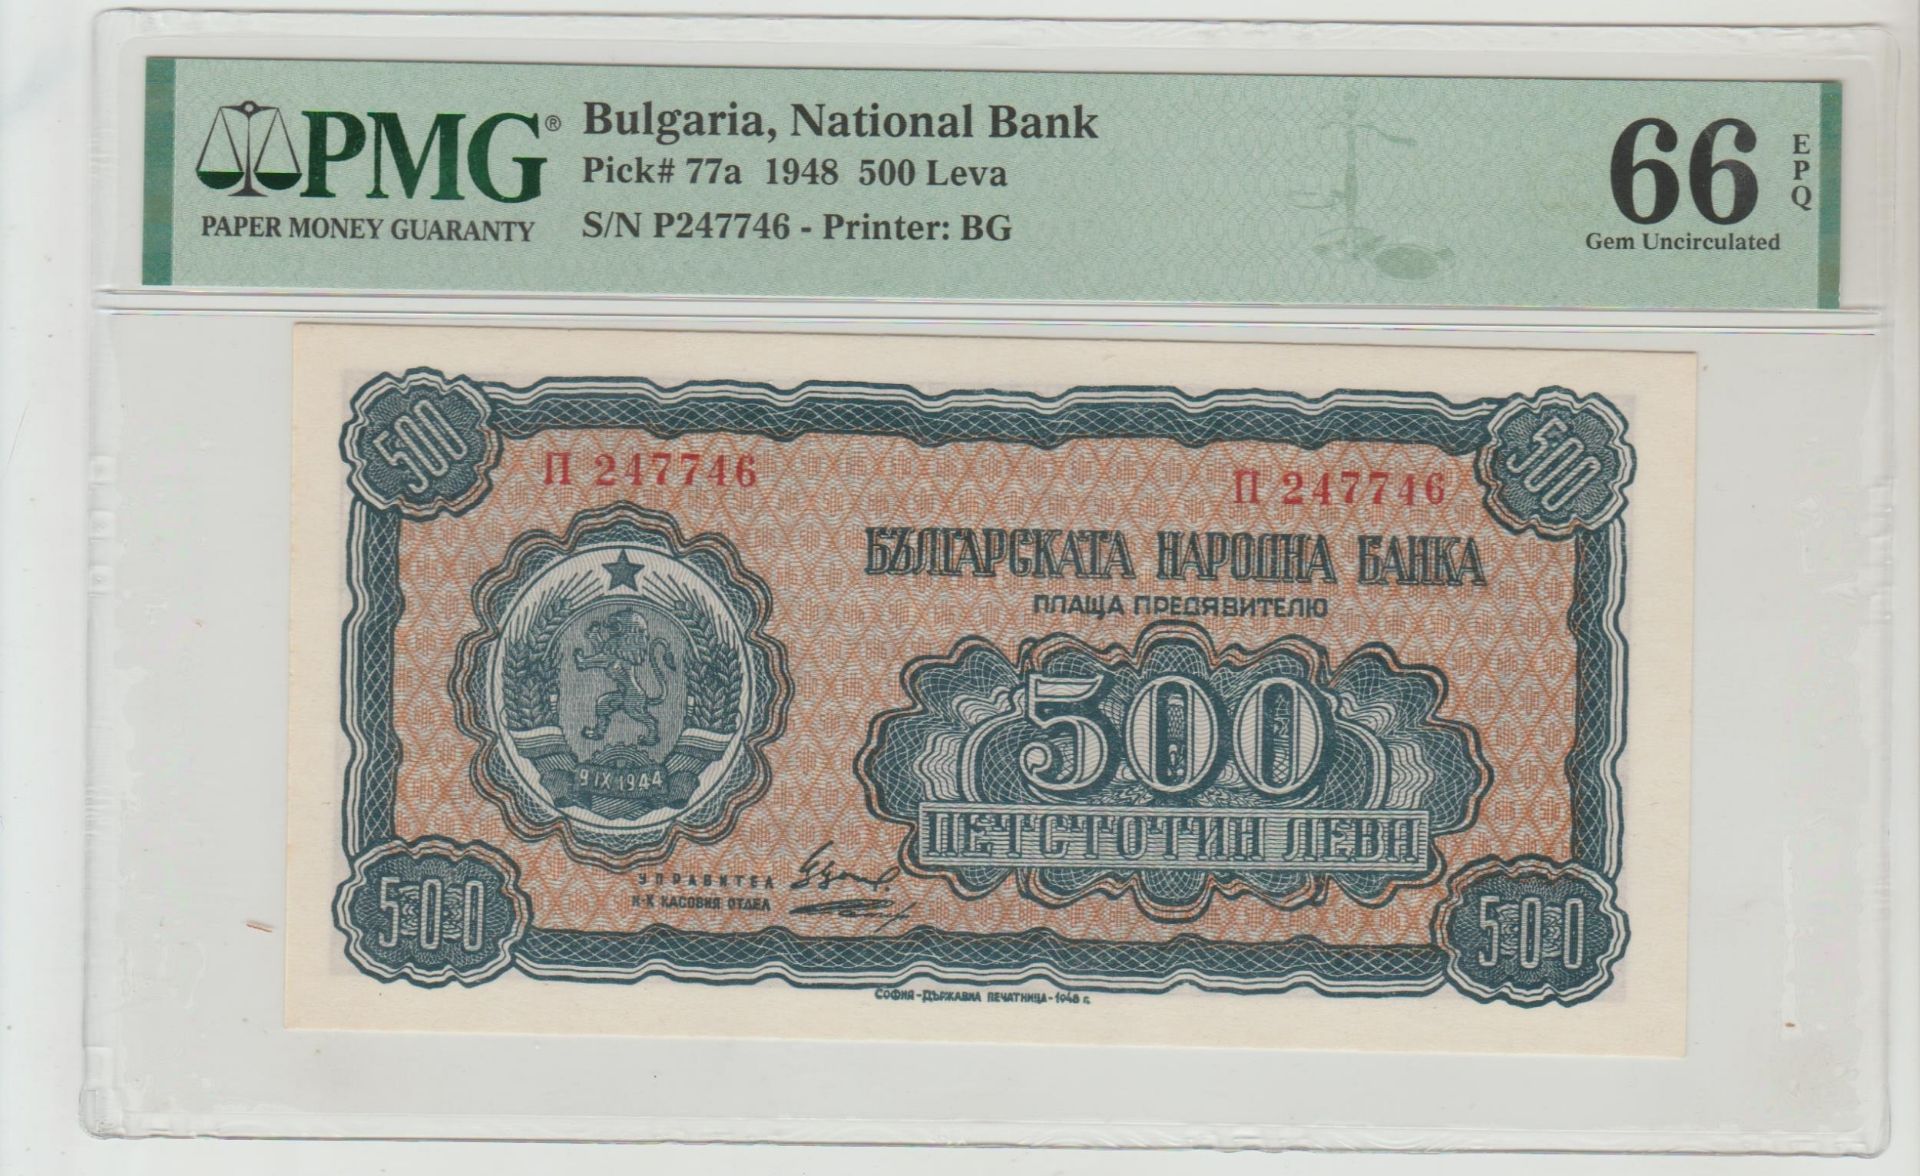 Bulgaria, 500 Leva, 1948 year